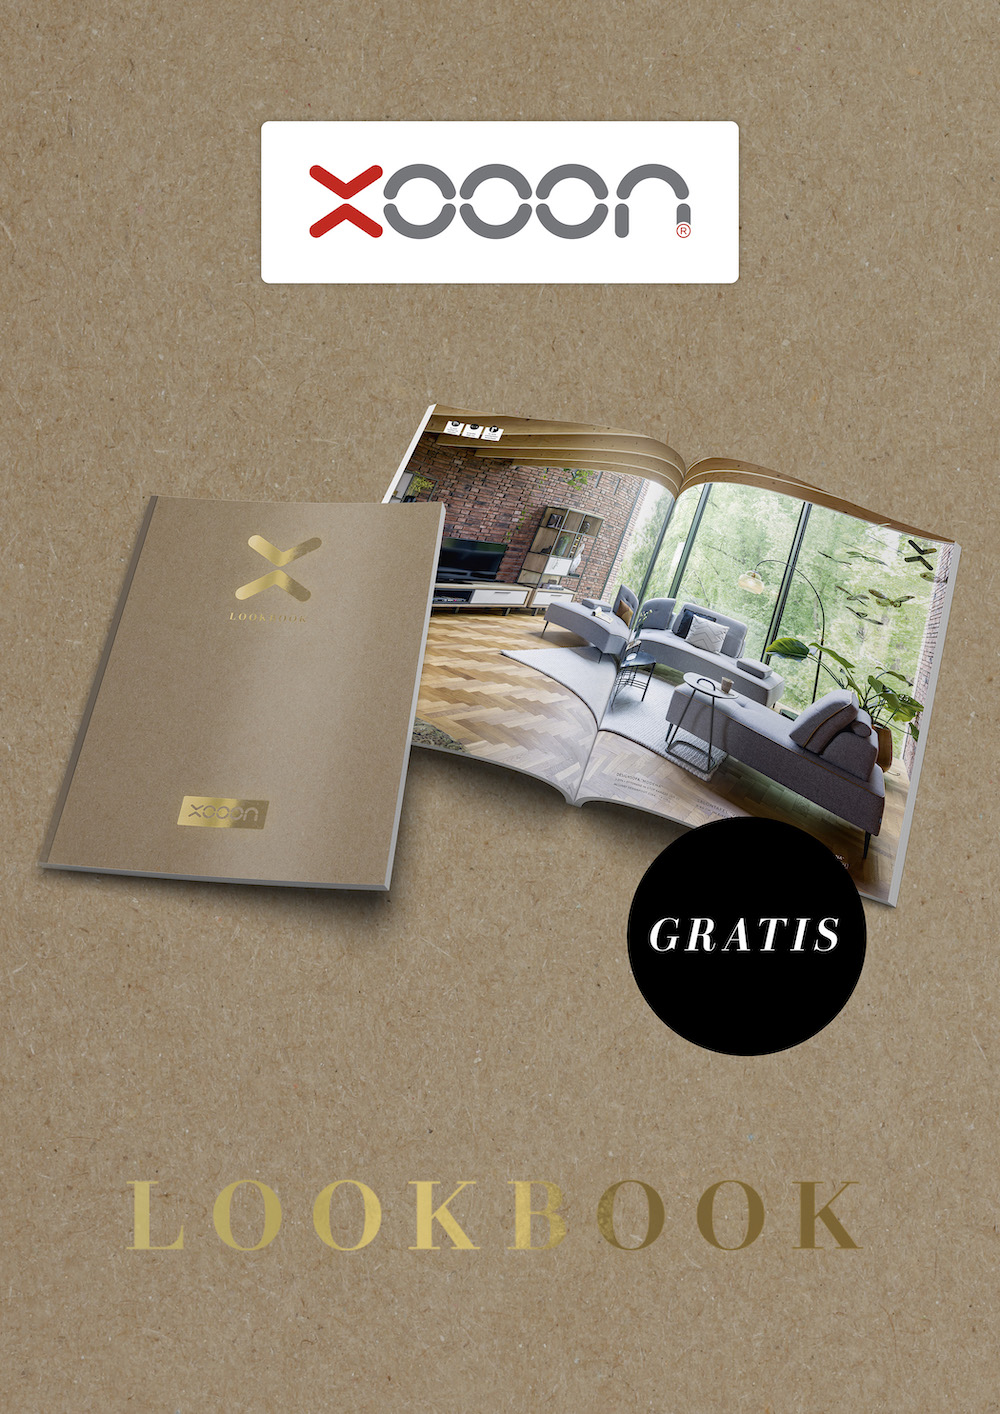 Bestel hier het gratis XOOON Lookbook voor interieurinspiratie #xooon #lookbook #designmeubelen